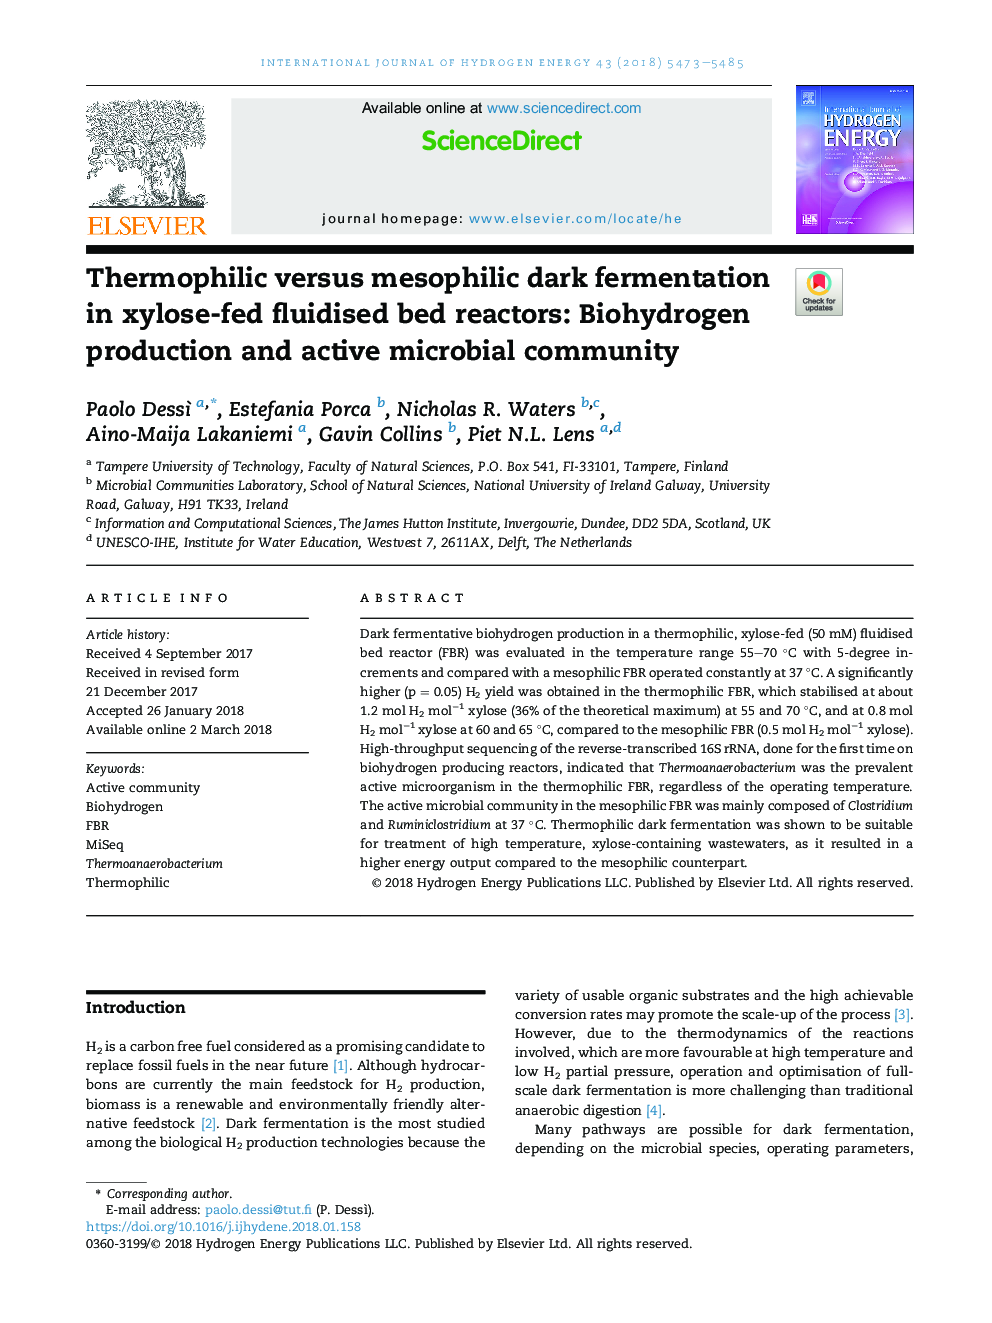 ترموفیلی در مقابل تخمیر تیره مازوفیلی در راکتورهای تخت مایع خوراکی زایلوز: تولید بیوشیمیایی و جامعه میکروبی فعال 